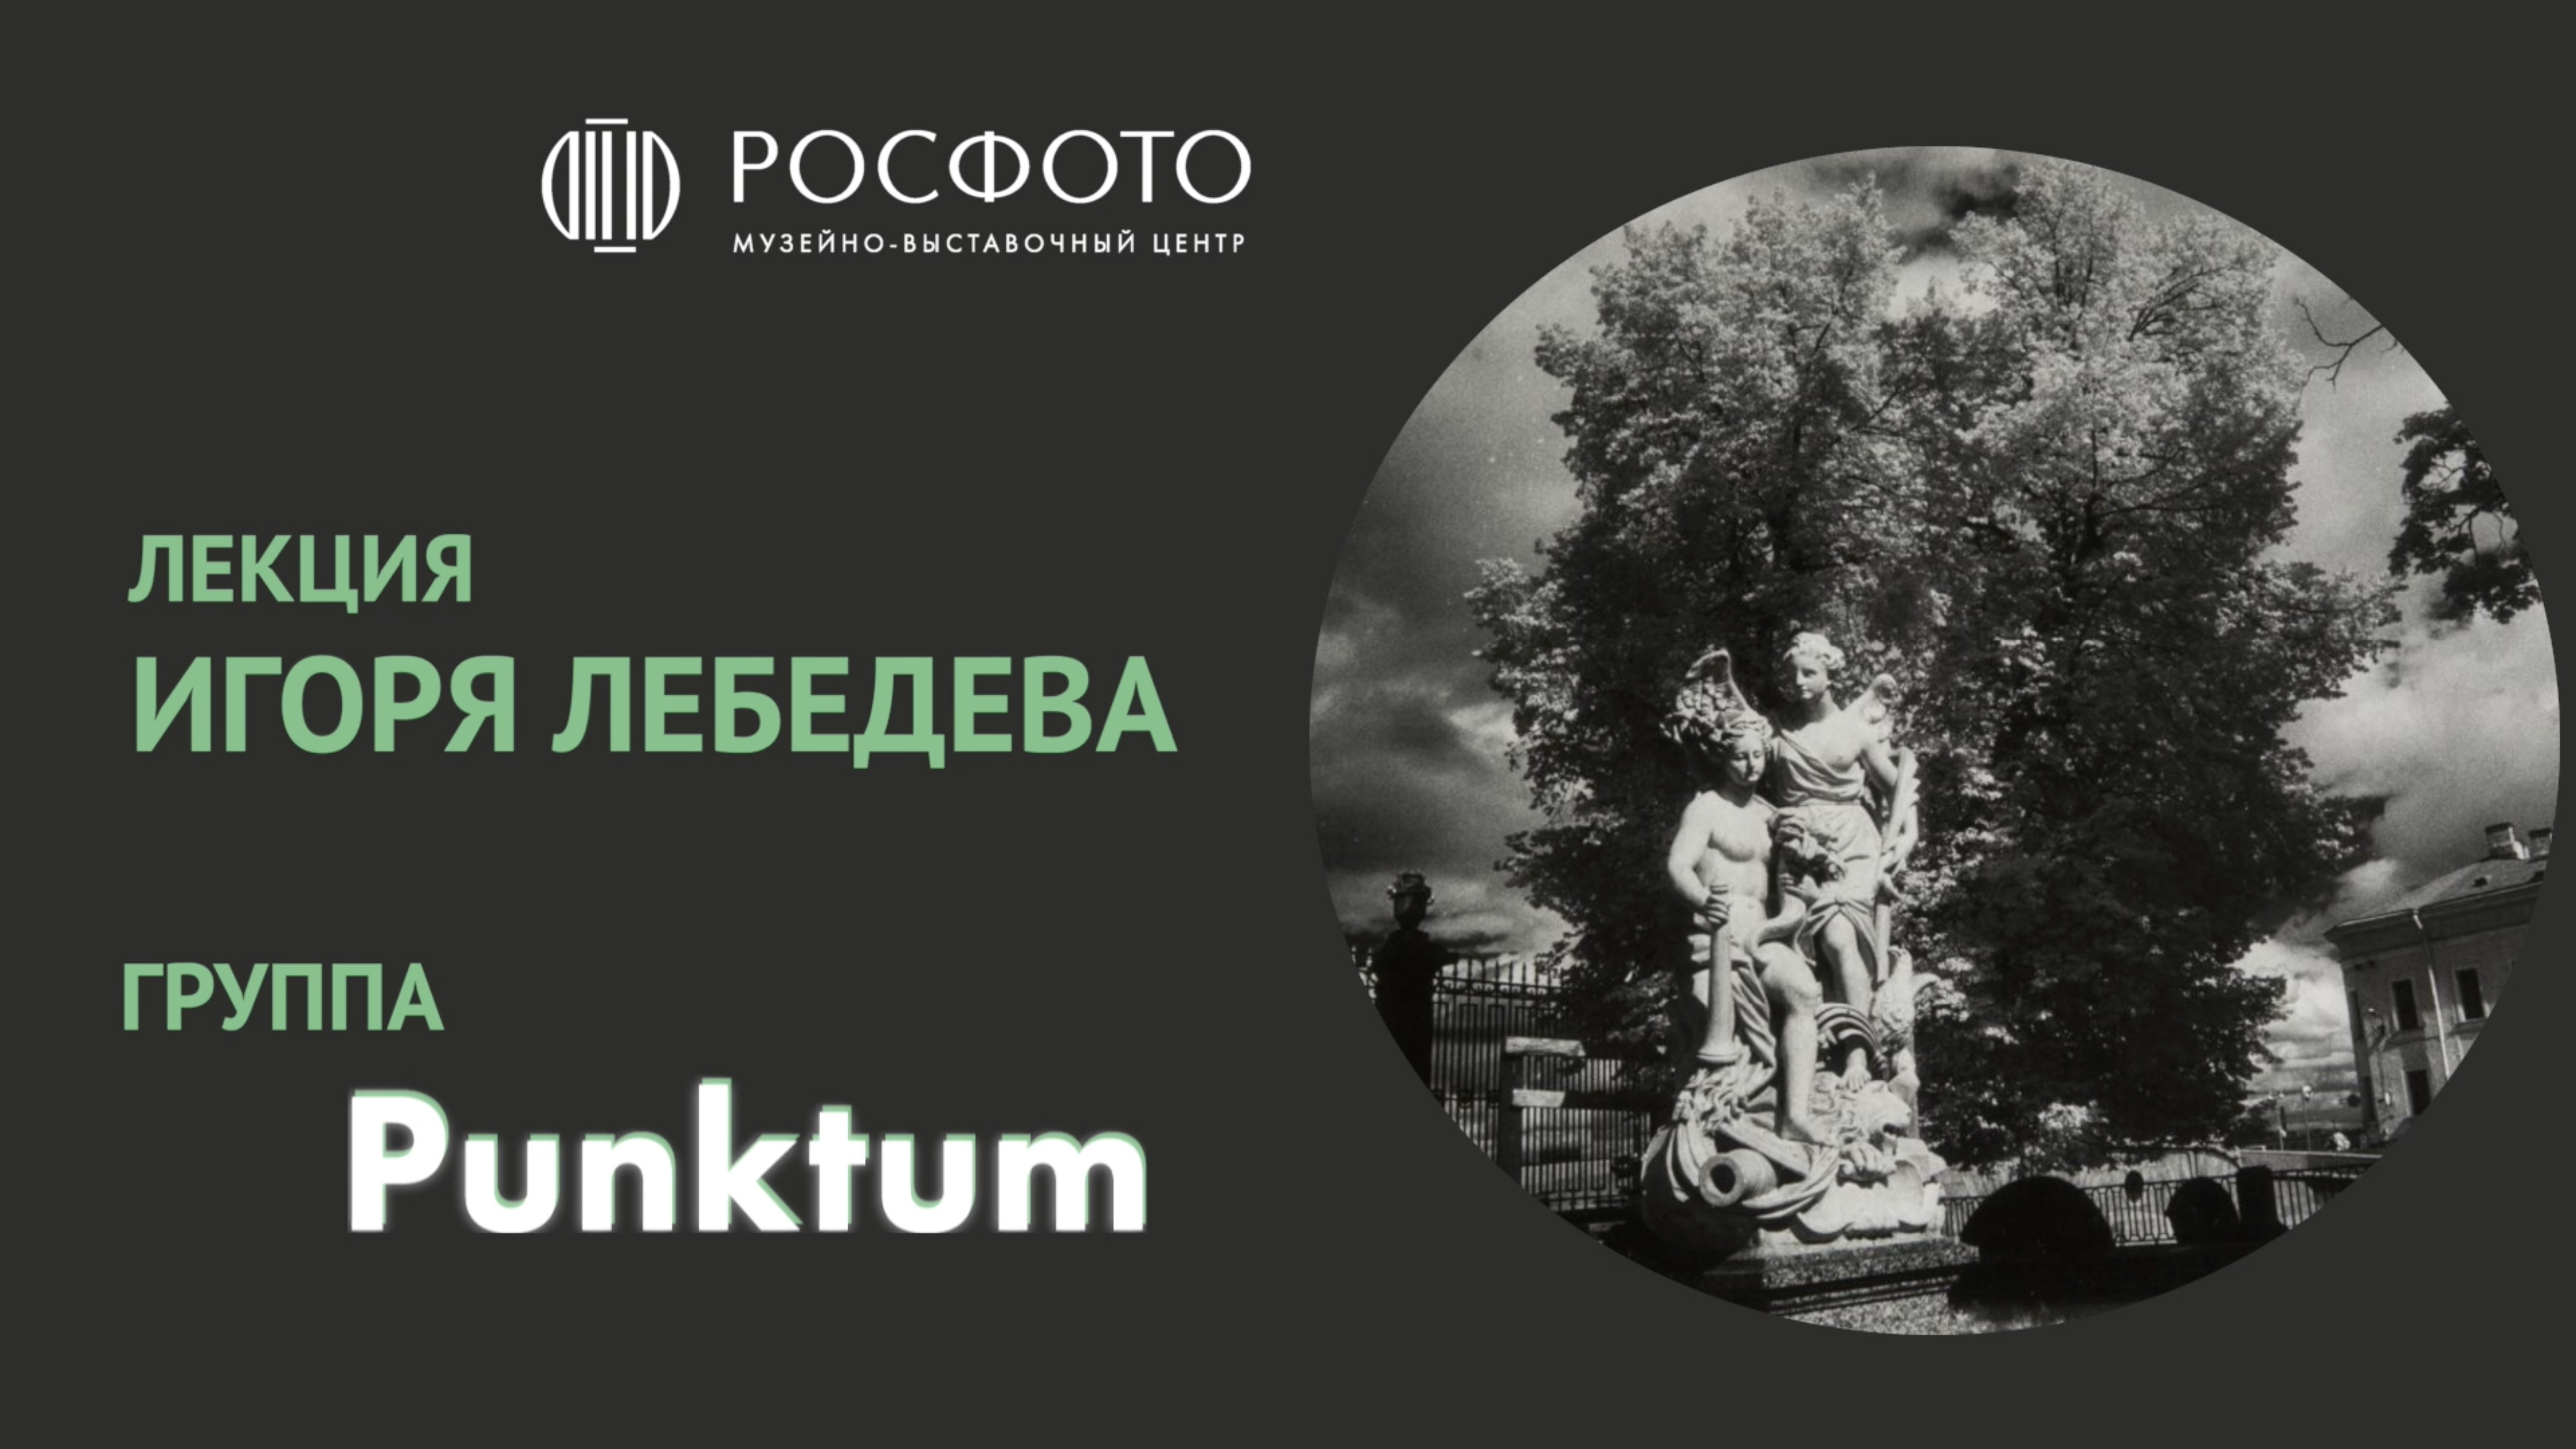 Лекция Игоря Лебедева о группе «Пунктум»: четыре творческих гения и эпоха, которая их сформировала